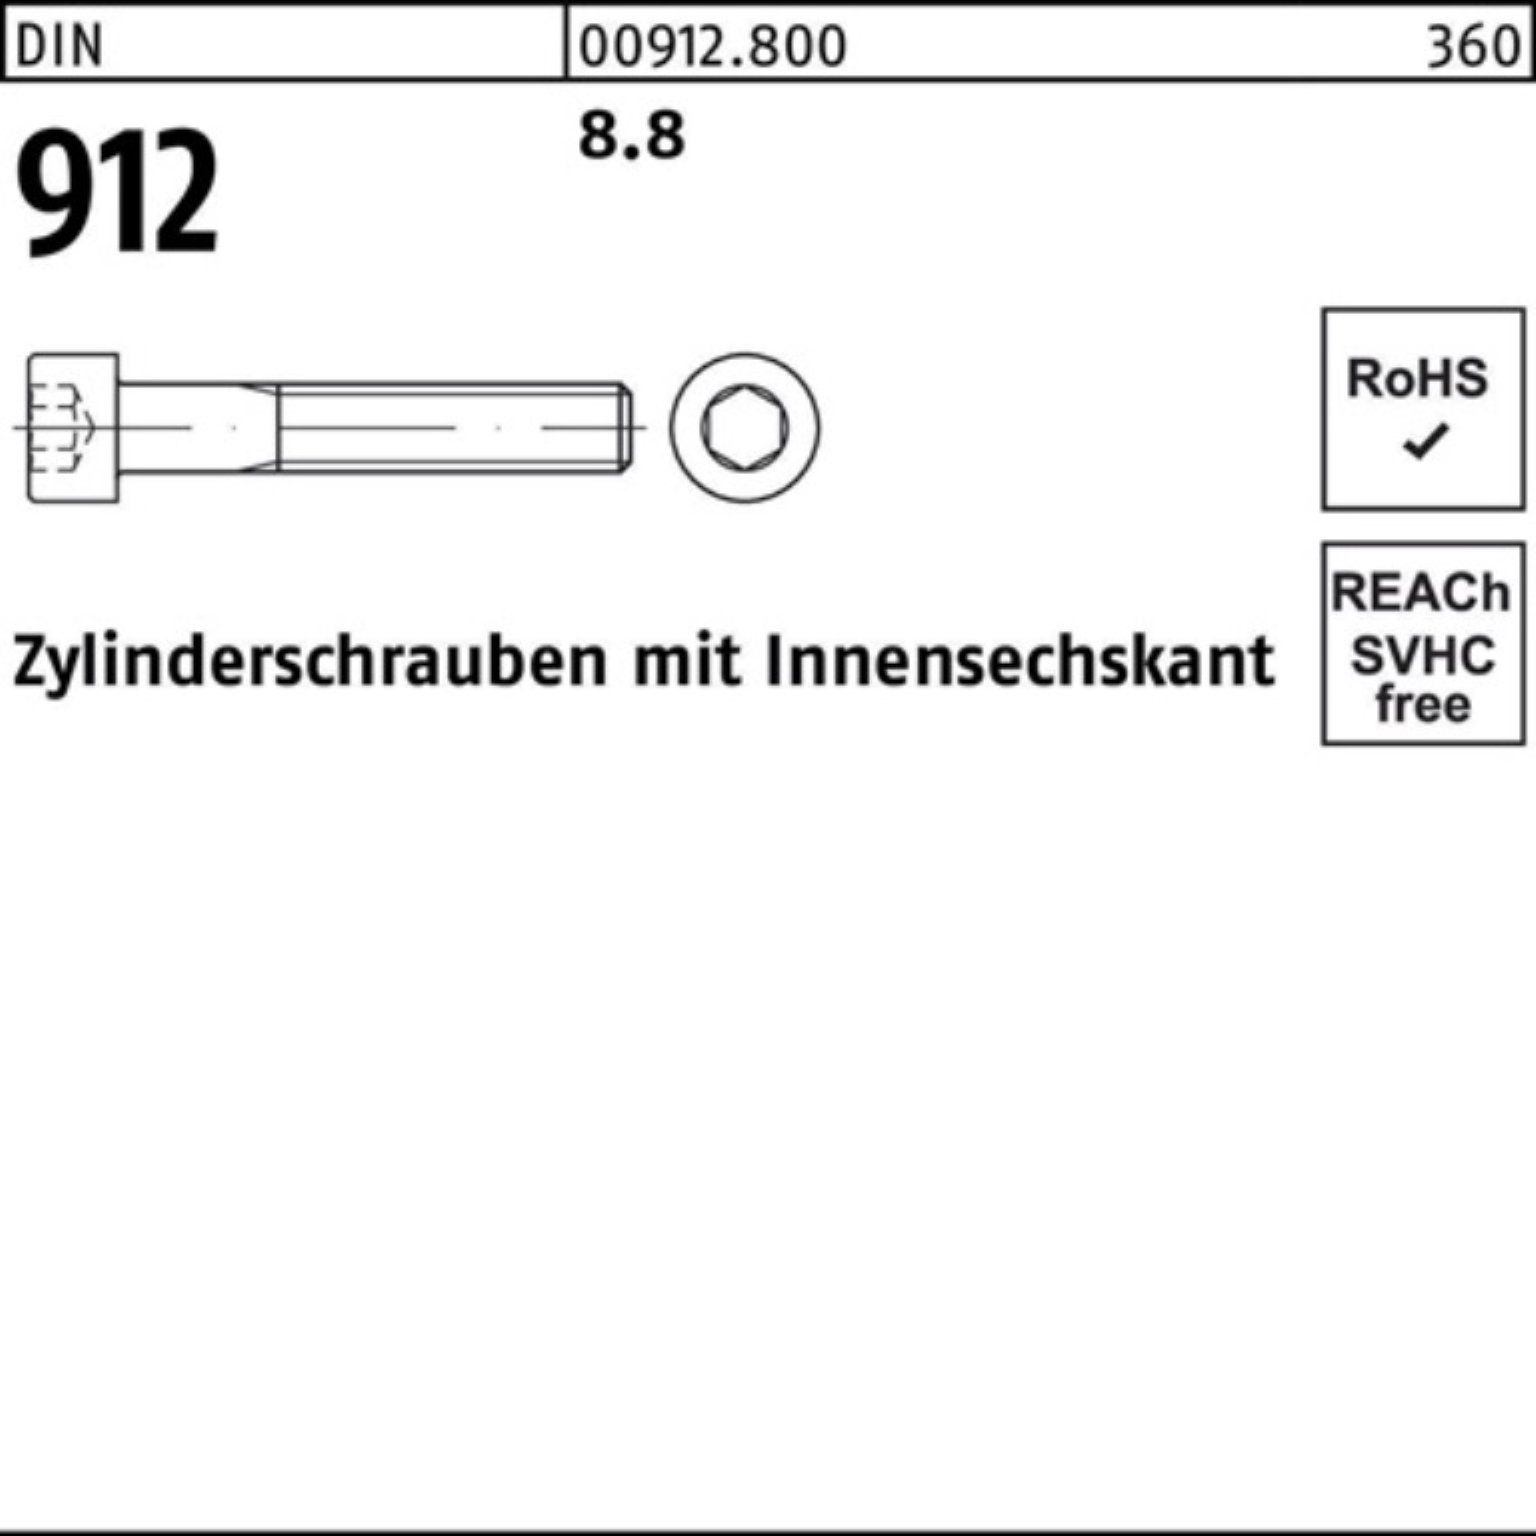 Reyher Zylinderschraube 100er Pack Zylinderschraube Innen-6kt 8.8 912 DIN 110 Stück 1 DI M30x